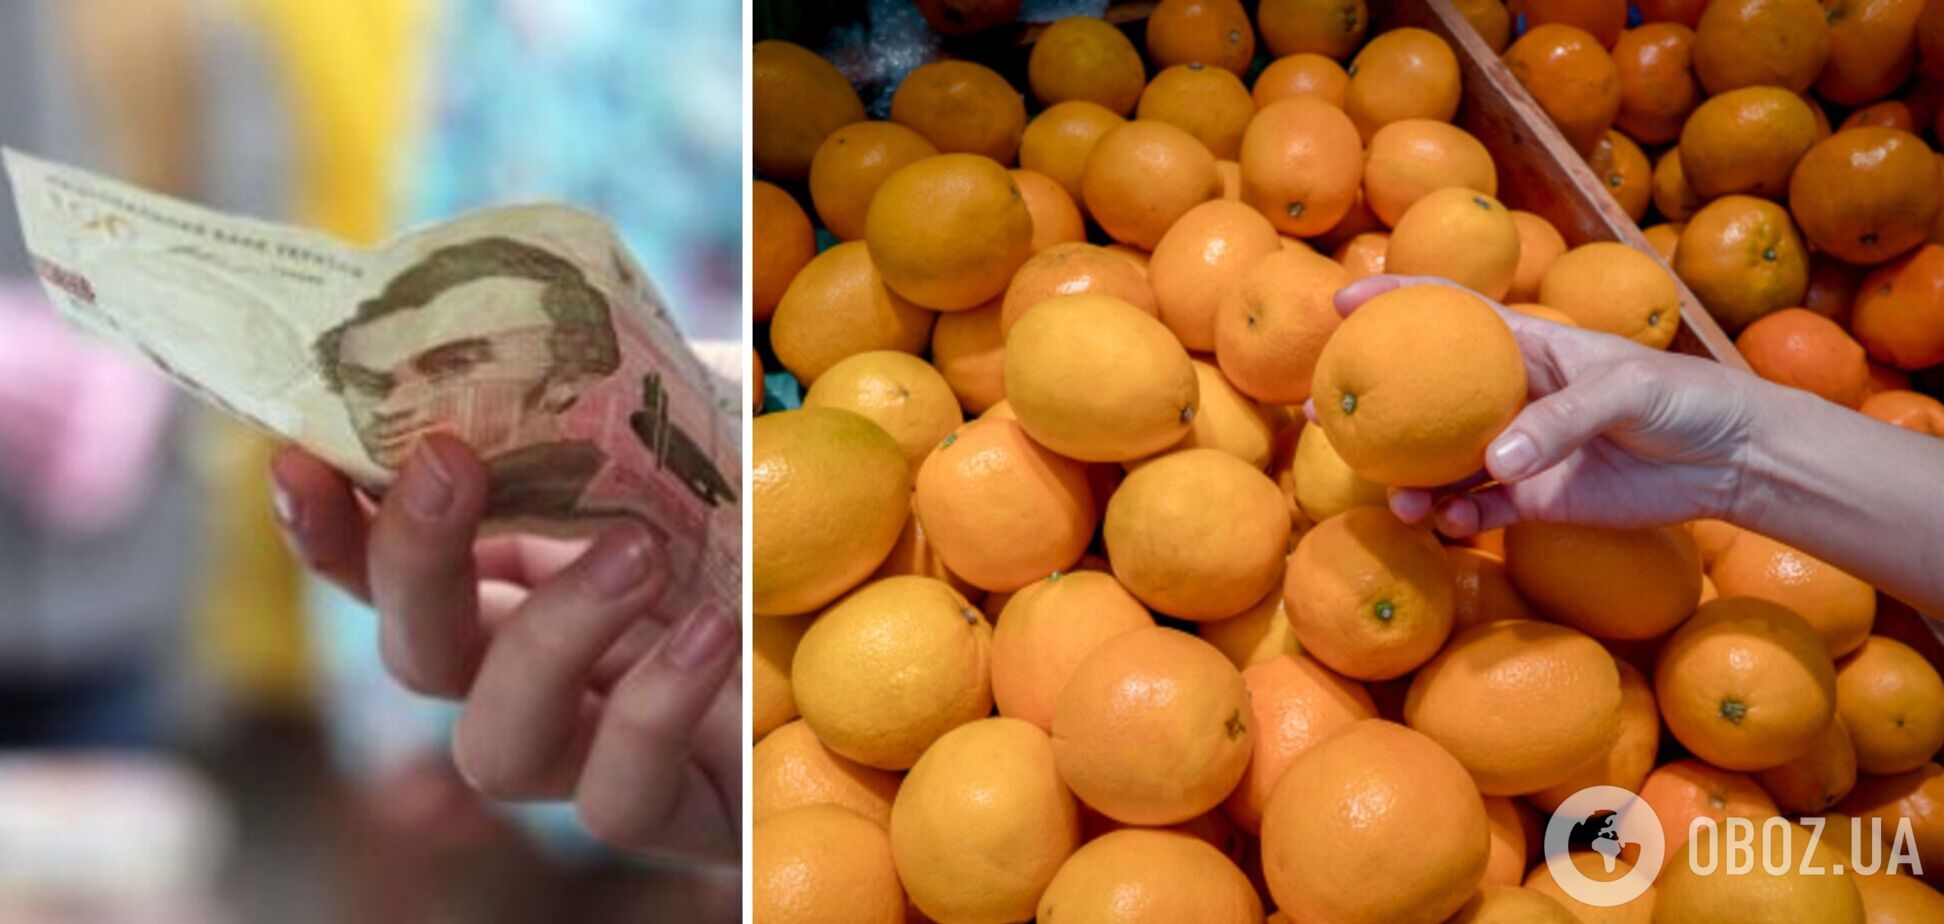 Как различить некачественные мандарины